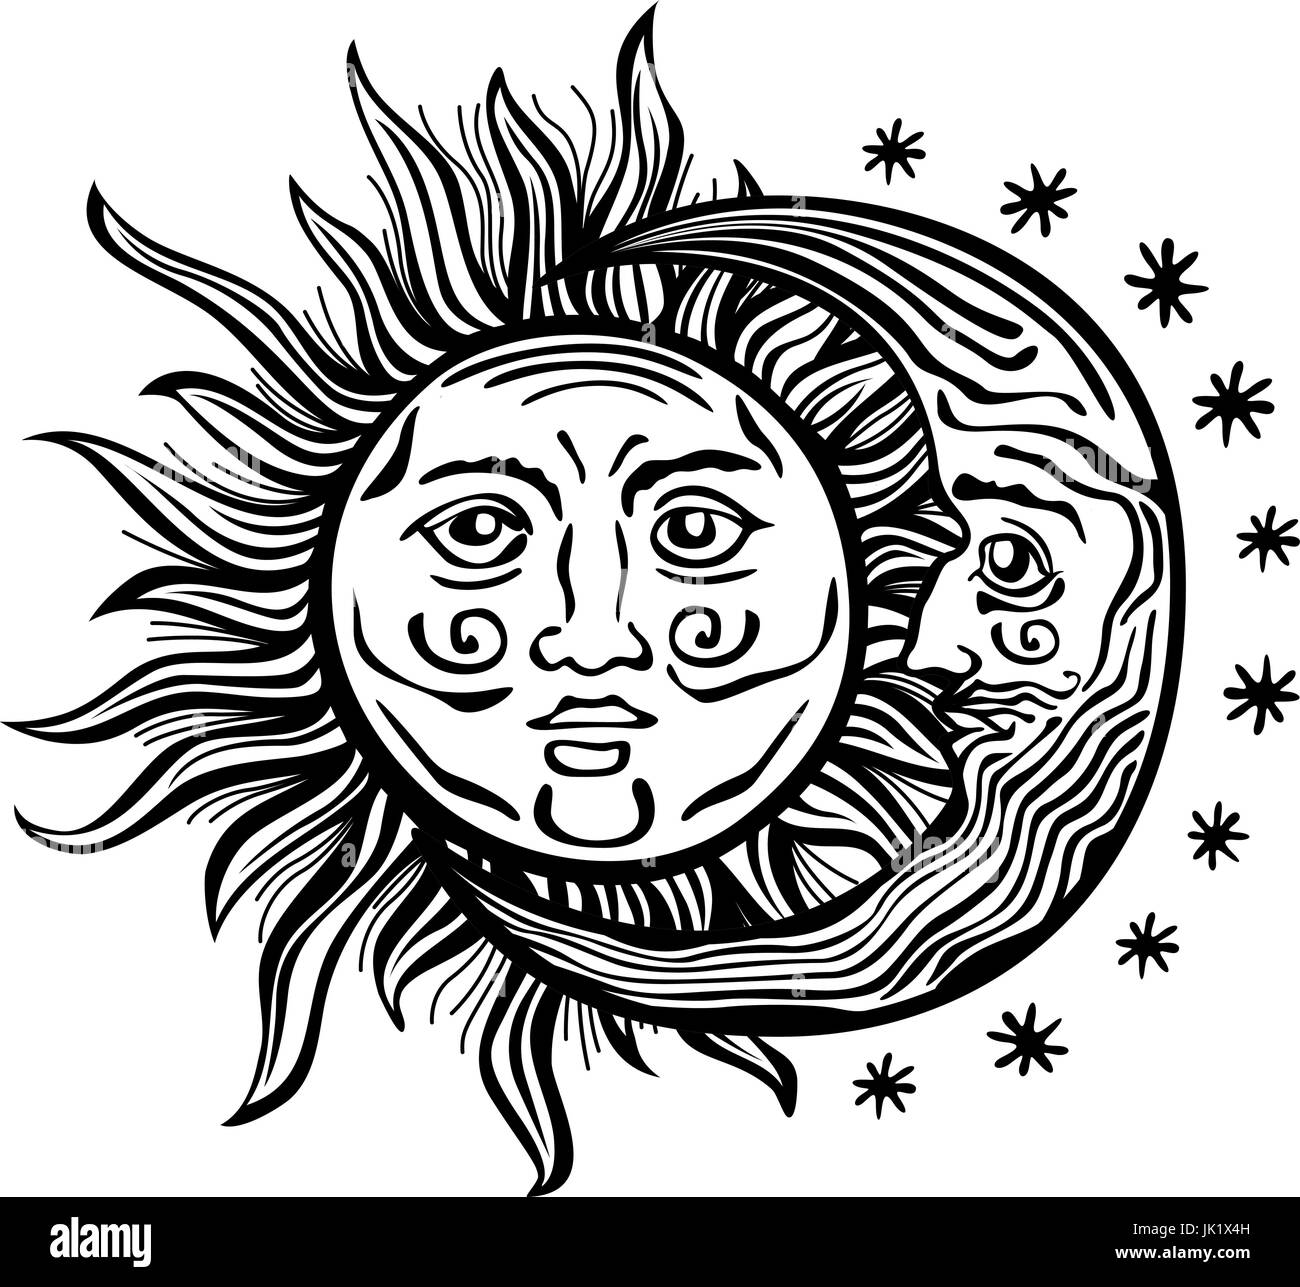 Un style cartoon illustration gravée d'un soleil, lune et étoile avec des visages humains. Contours sont noir avec un fond transparent pour une réutilisation aisée col Illustration de Vecteur